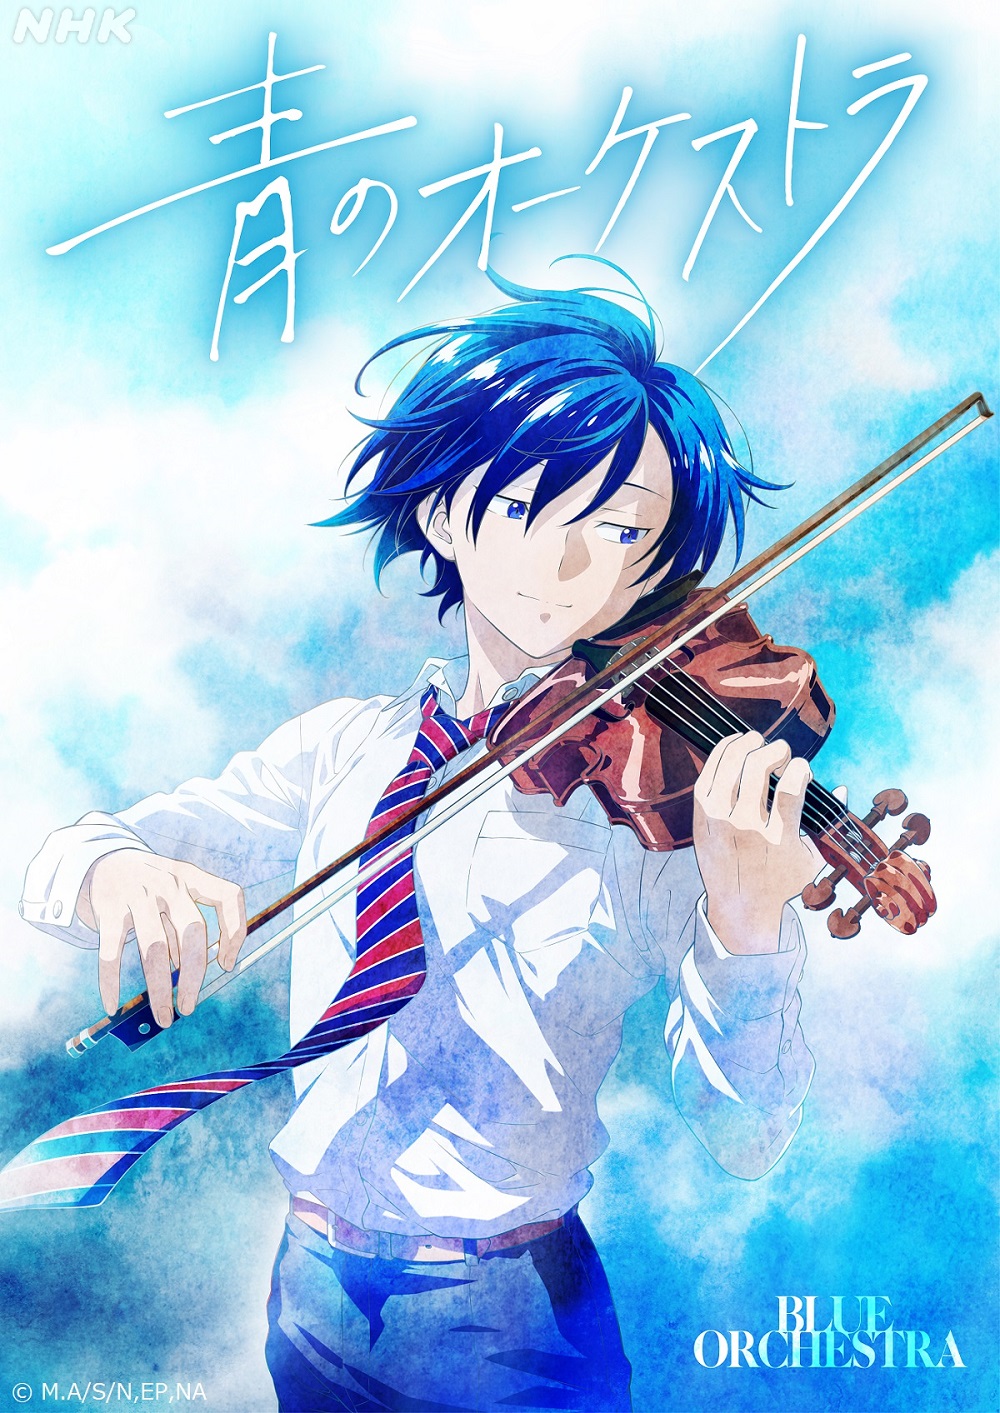 TVアニメ「青のオーケストラ」NHK Eテレにて2023年春放送決定!